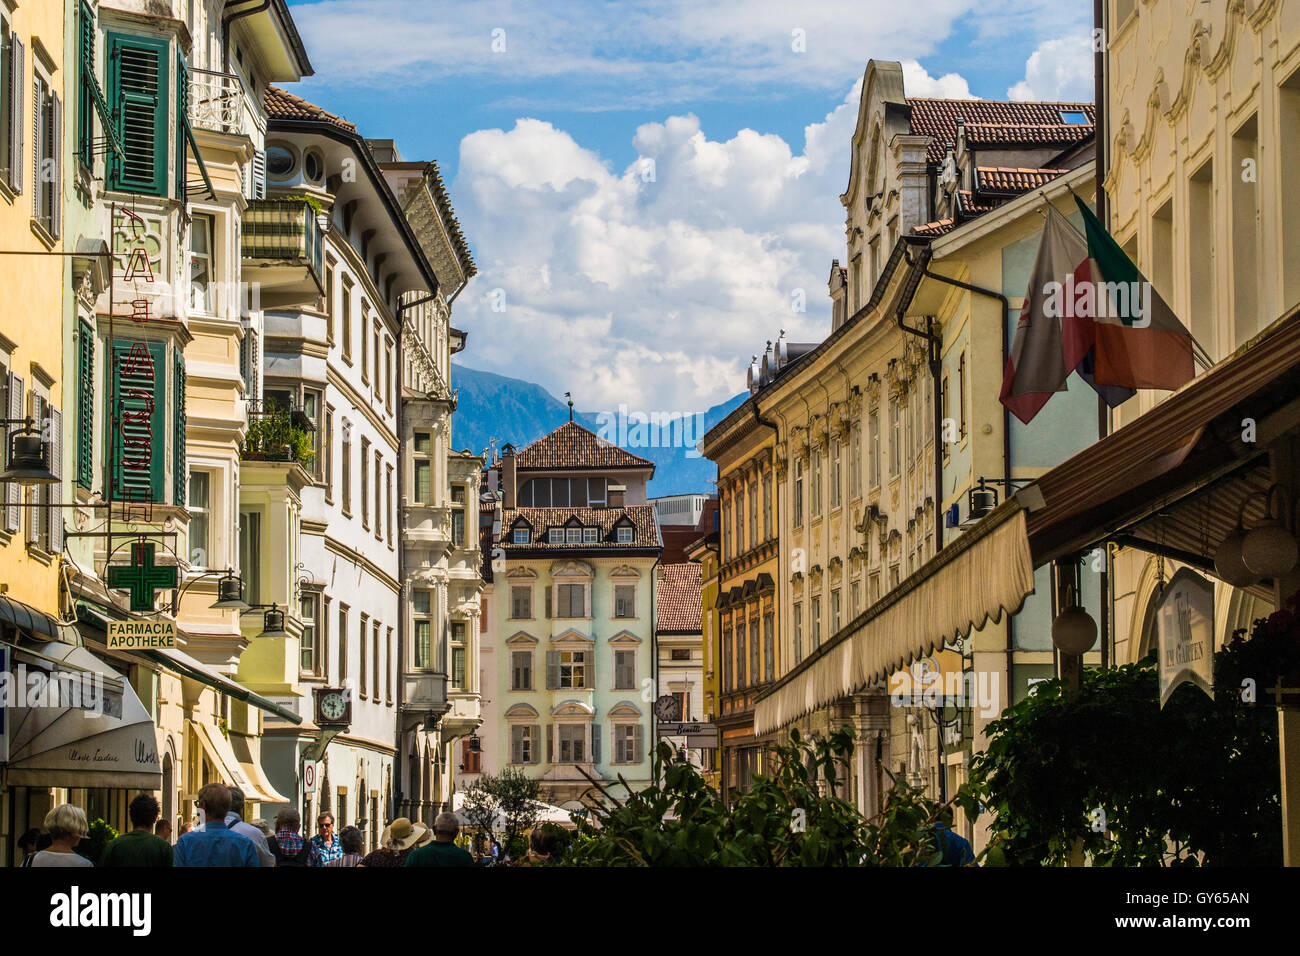 Bolzano town, Bolzano province, Trentino-Alto Adige region, Italy. Stock Photo